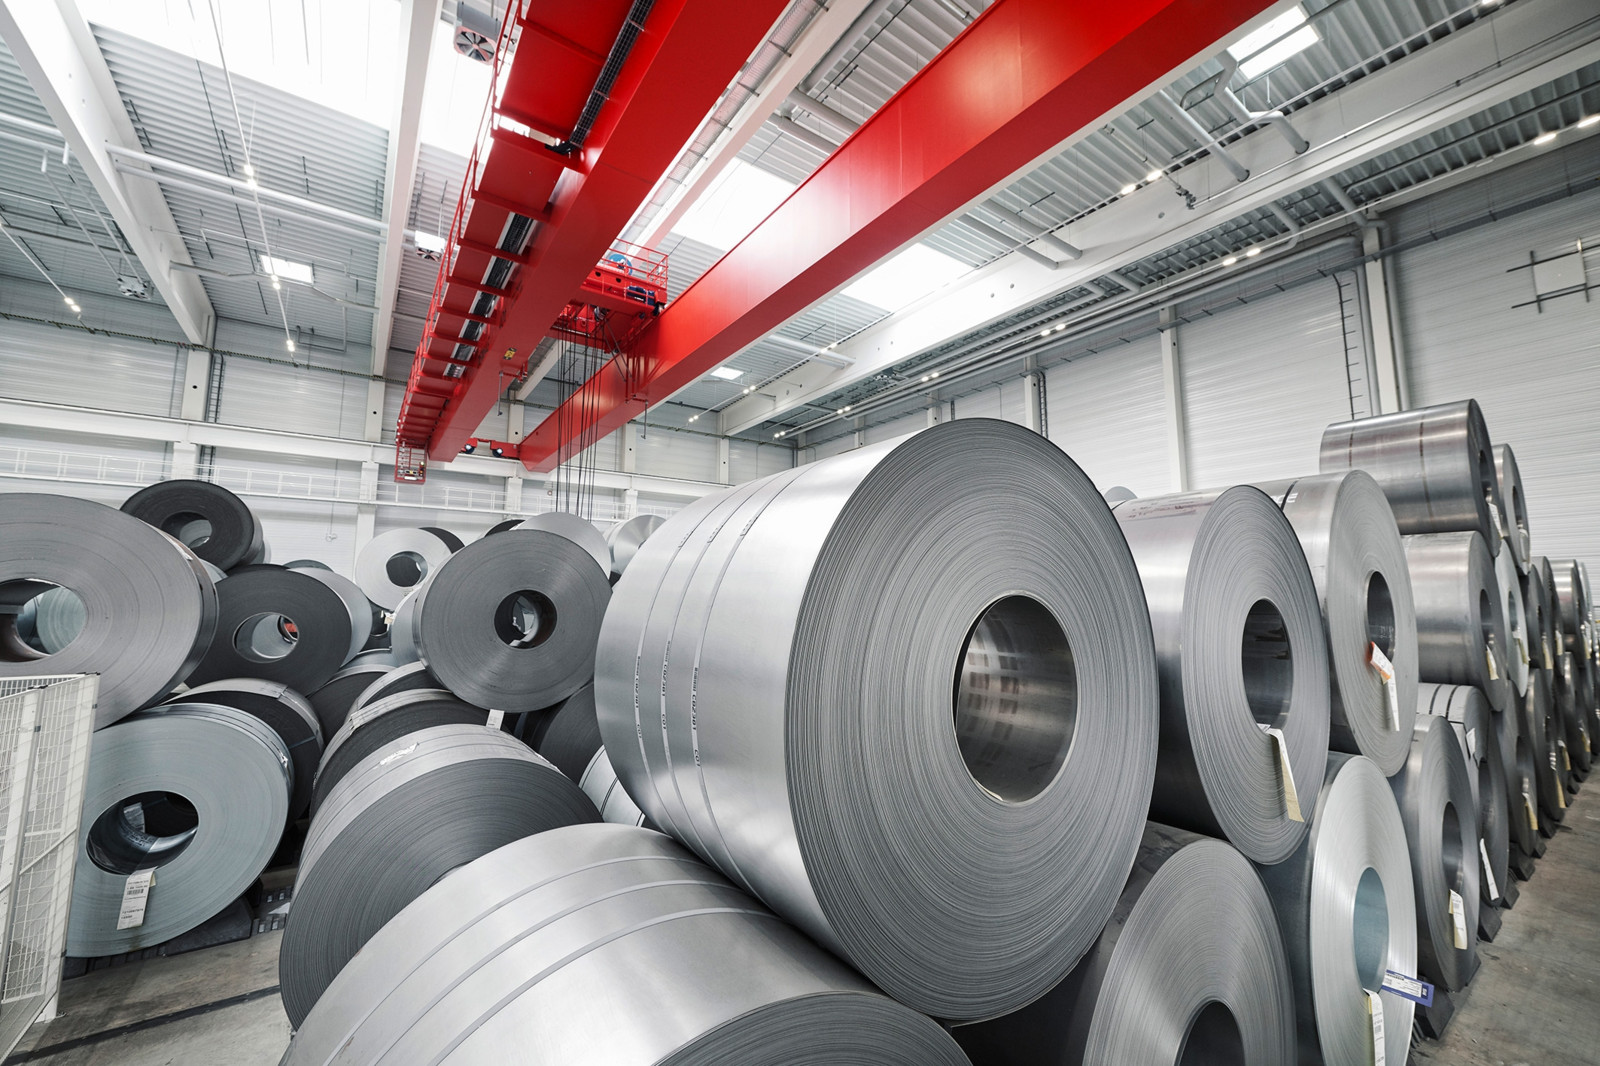 Kunden von Stahlo können zukünftig grünen Stahl an allen drei Werkstandorten von Stahlo – in Dillenburg, Gera und Nordhausen – erhalten. 